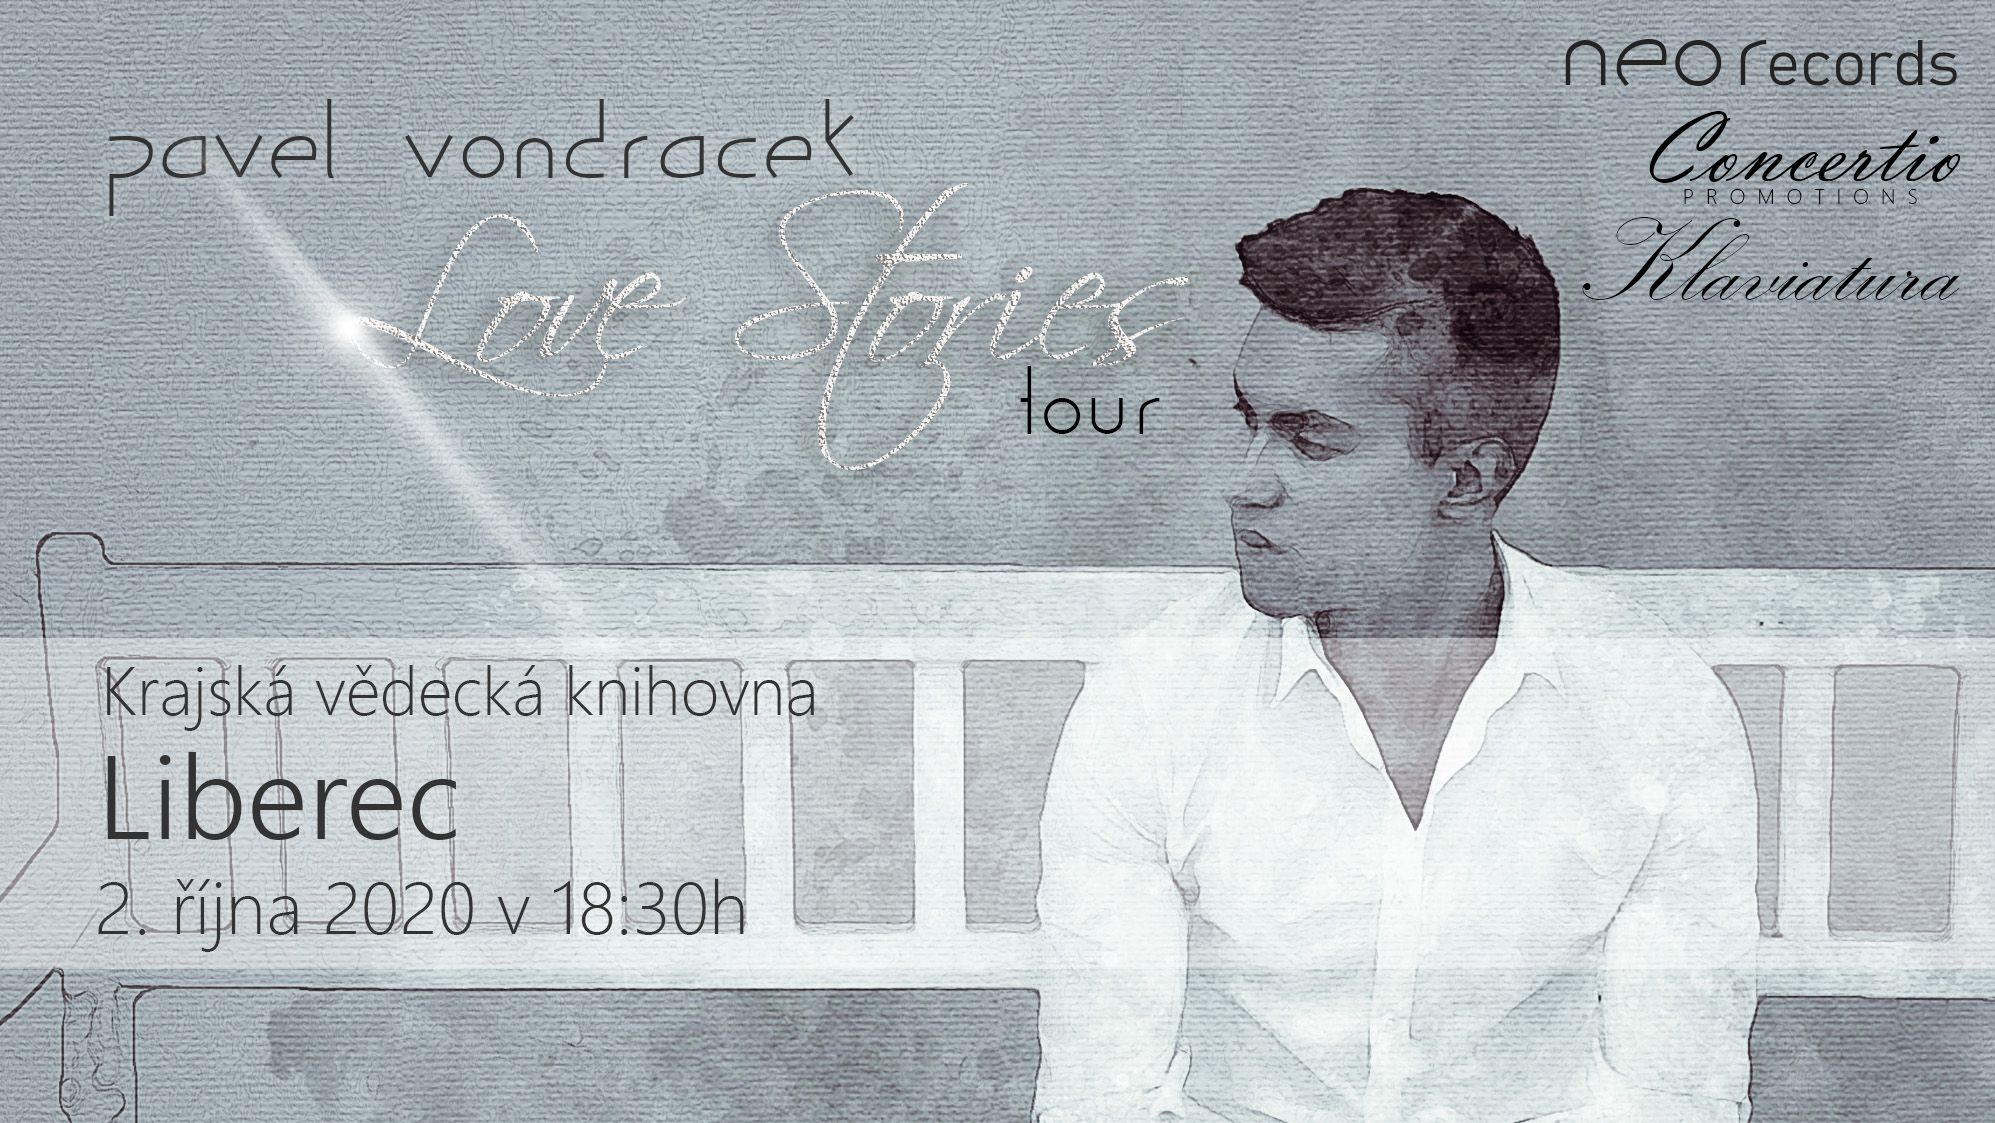 Pavel Vondráček - Love Stories Tour - koncert v Liberci -Krajská vědecká knihovna Liberec, Rumjancevova 1362/1